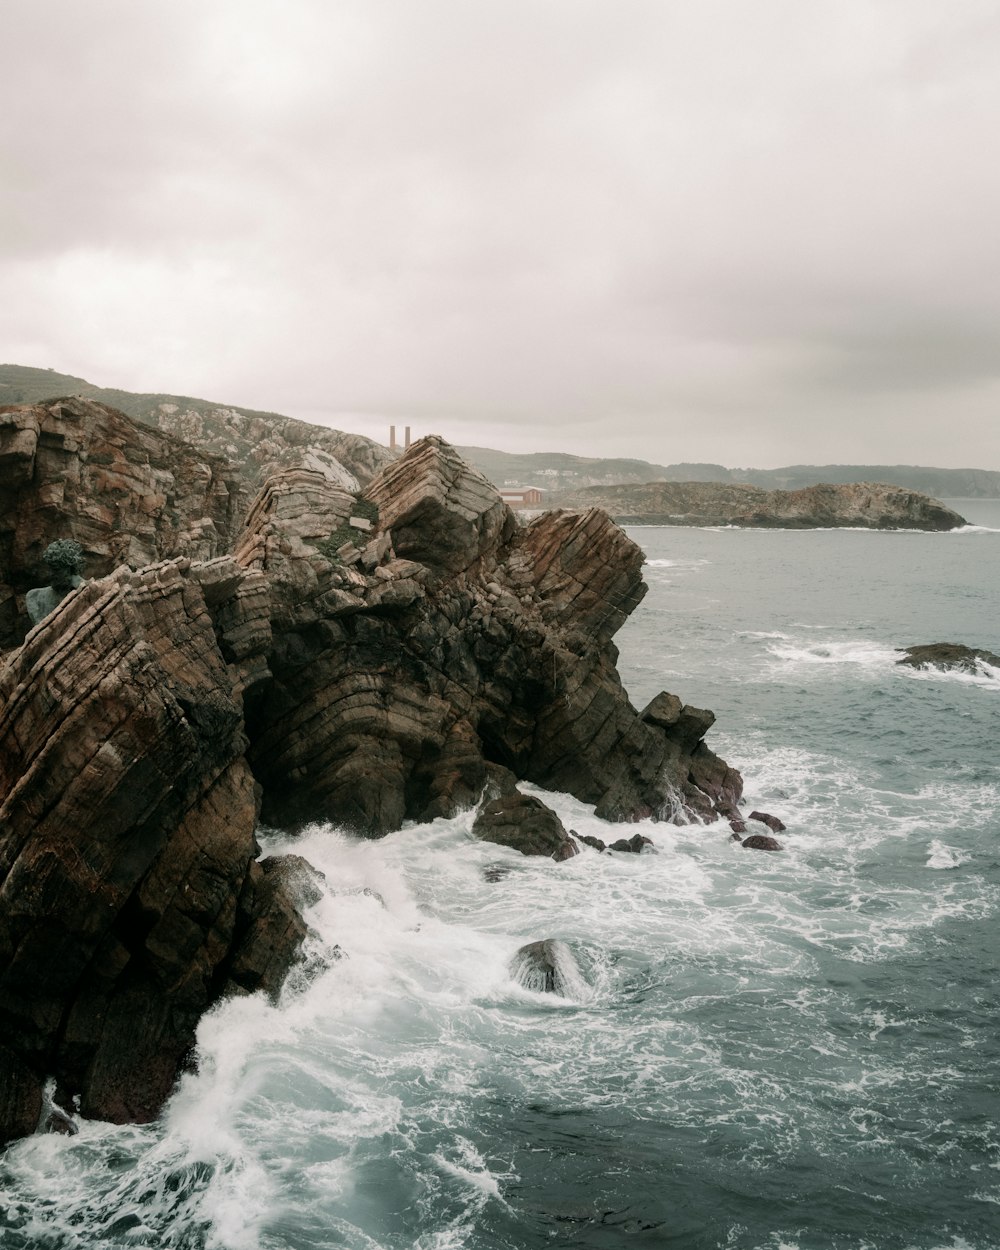 Un acantilado rocoso con olas rompiendo contra él